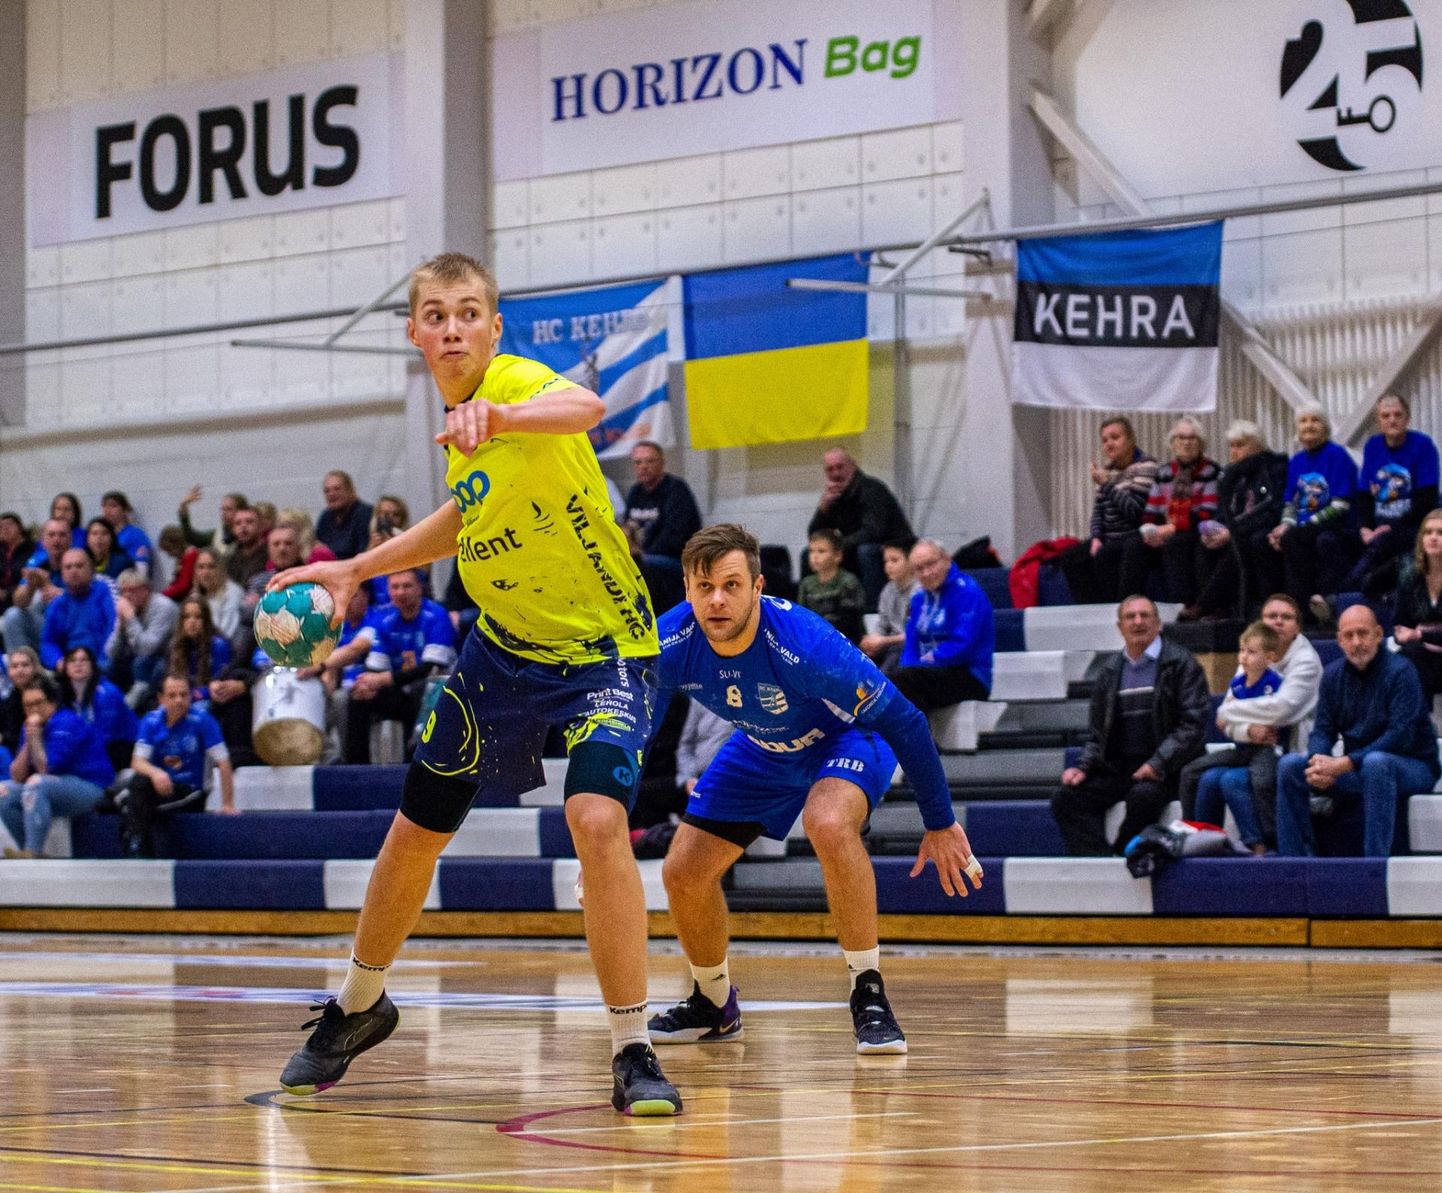 Kolmapäevases Eesti meistriliiga mängus HC Kehra / Horizon Pulp & Paperi vastu viskas Viljandi HC
resultatiivseima mängijana üheksa väravat Hendrik Koks.